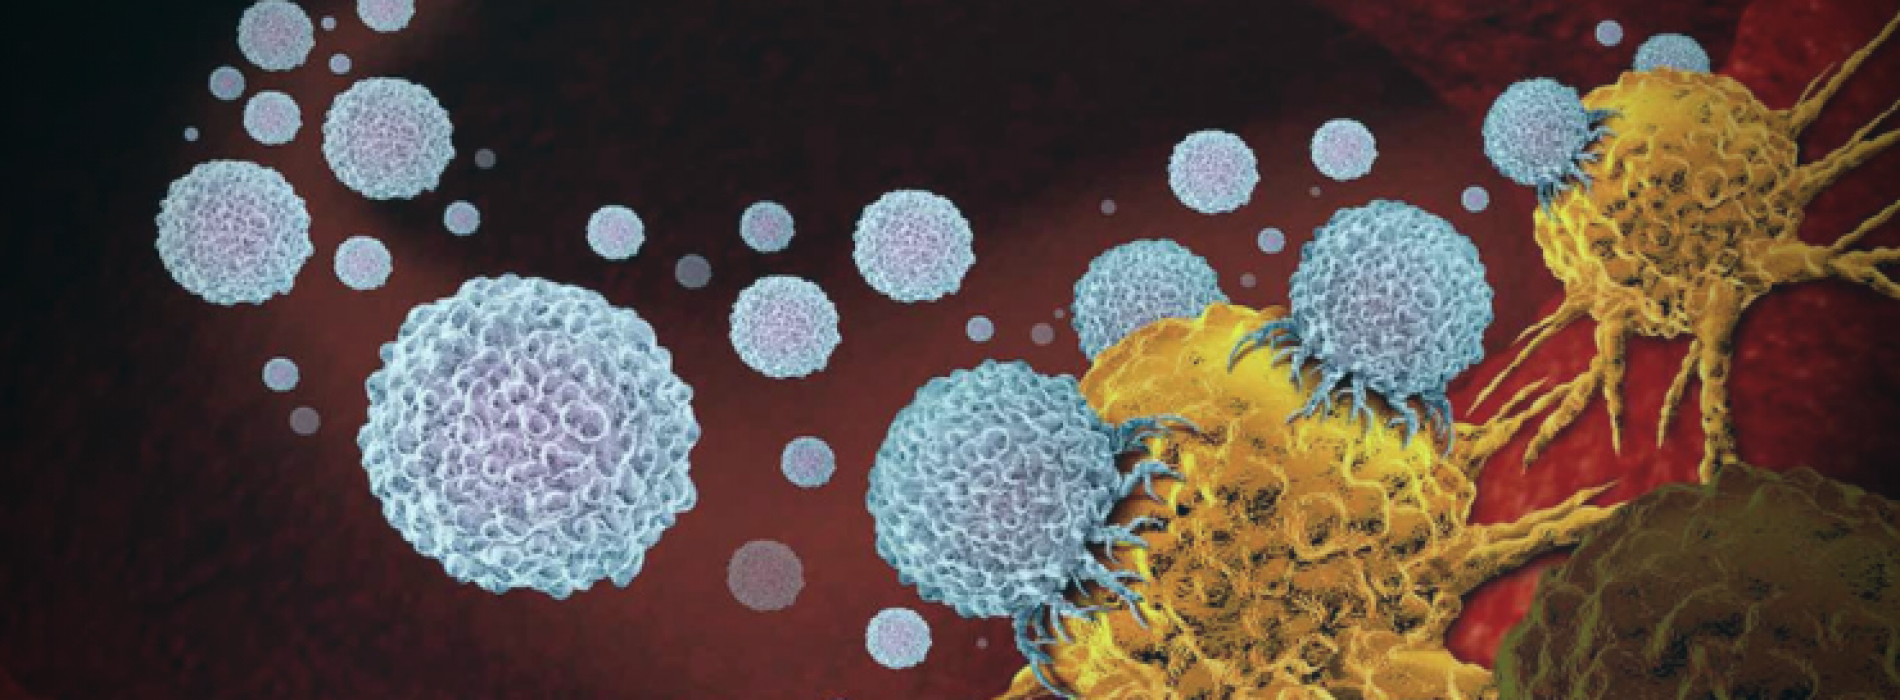 Darmbacteriën kunnen tumoren doordringen en kankertherapie bevorderen, suggereert studie